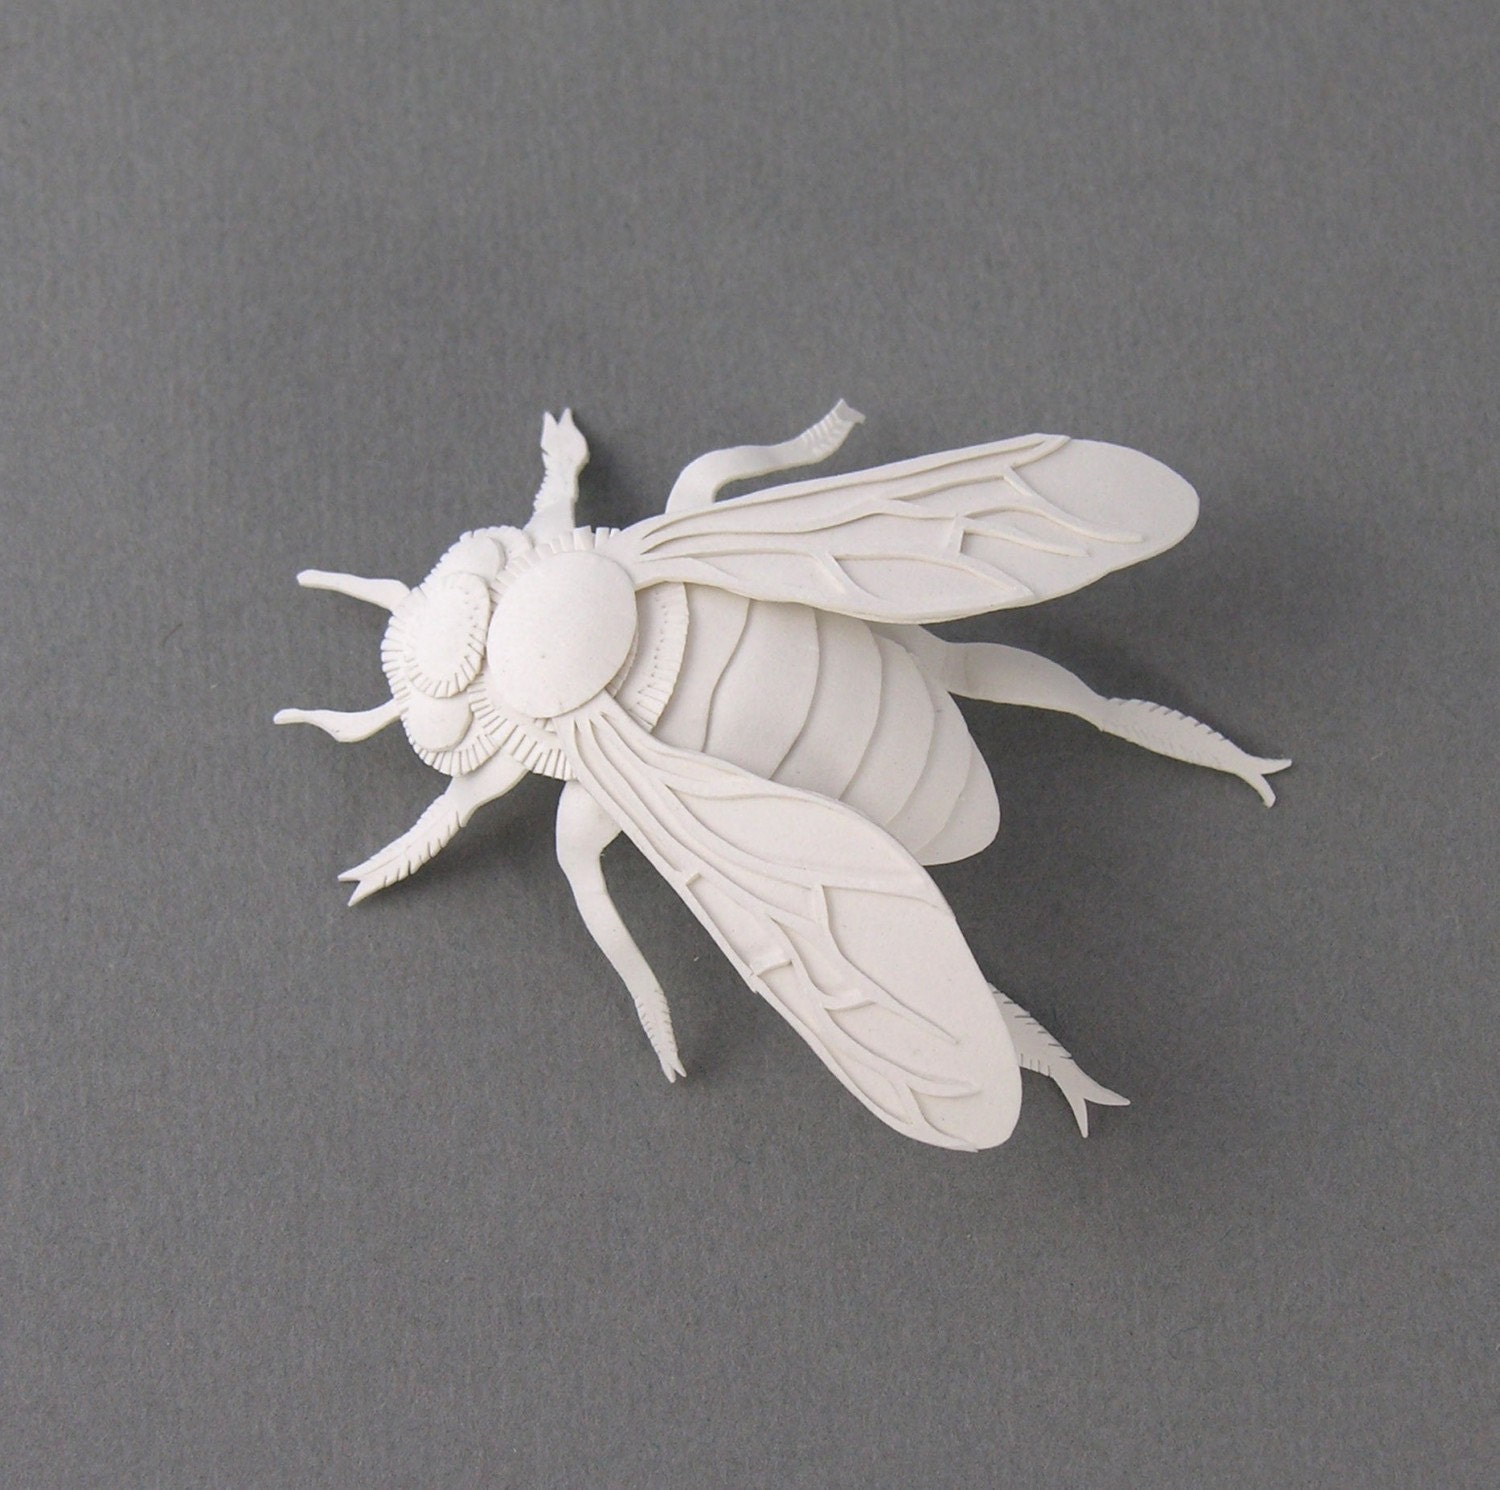 Bee Miniature Paper Sculpture - elsita